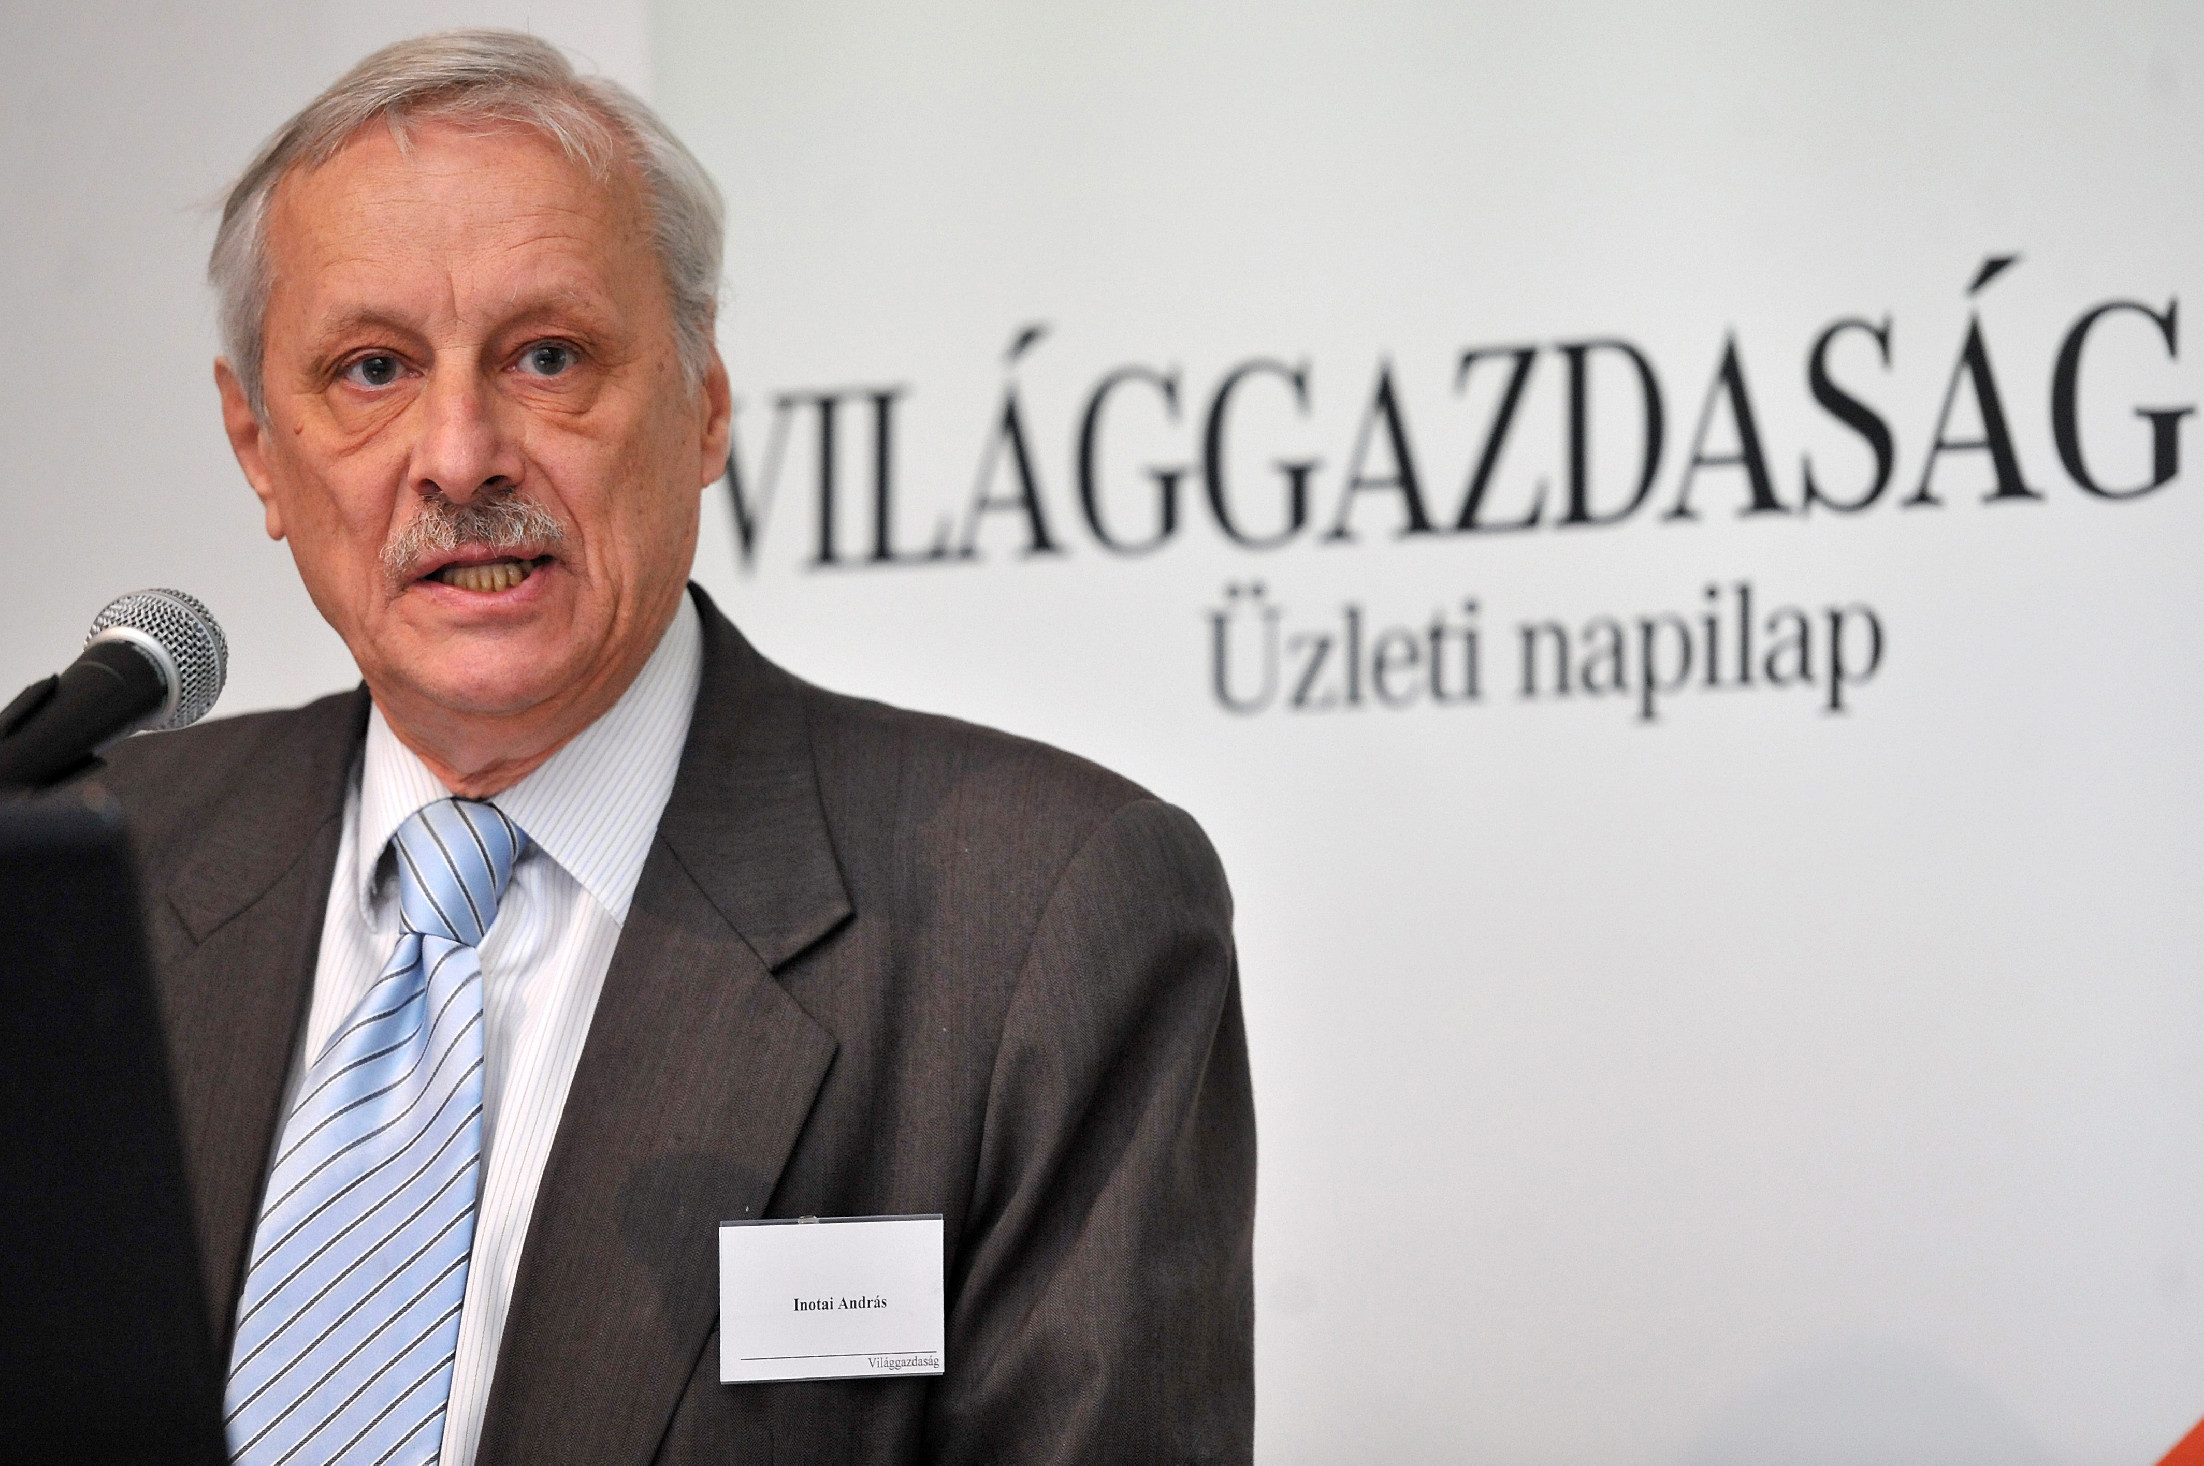 Inotai András közgazdász professzor elmondta, mi az Orbán-rendszer legsúlyosabb vétke